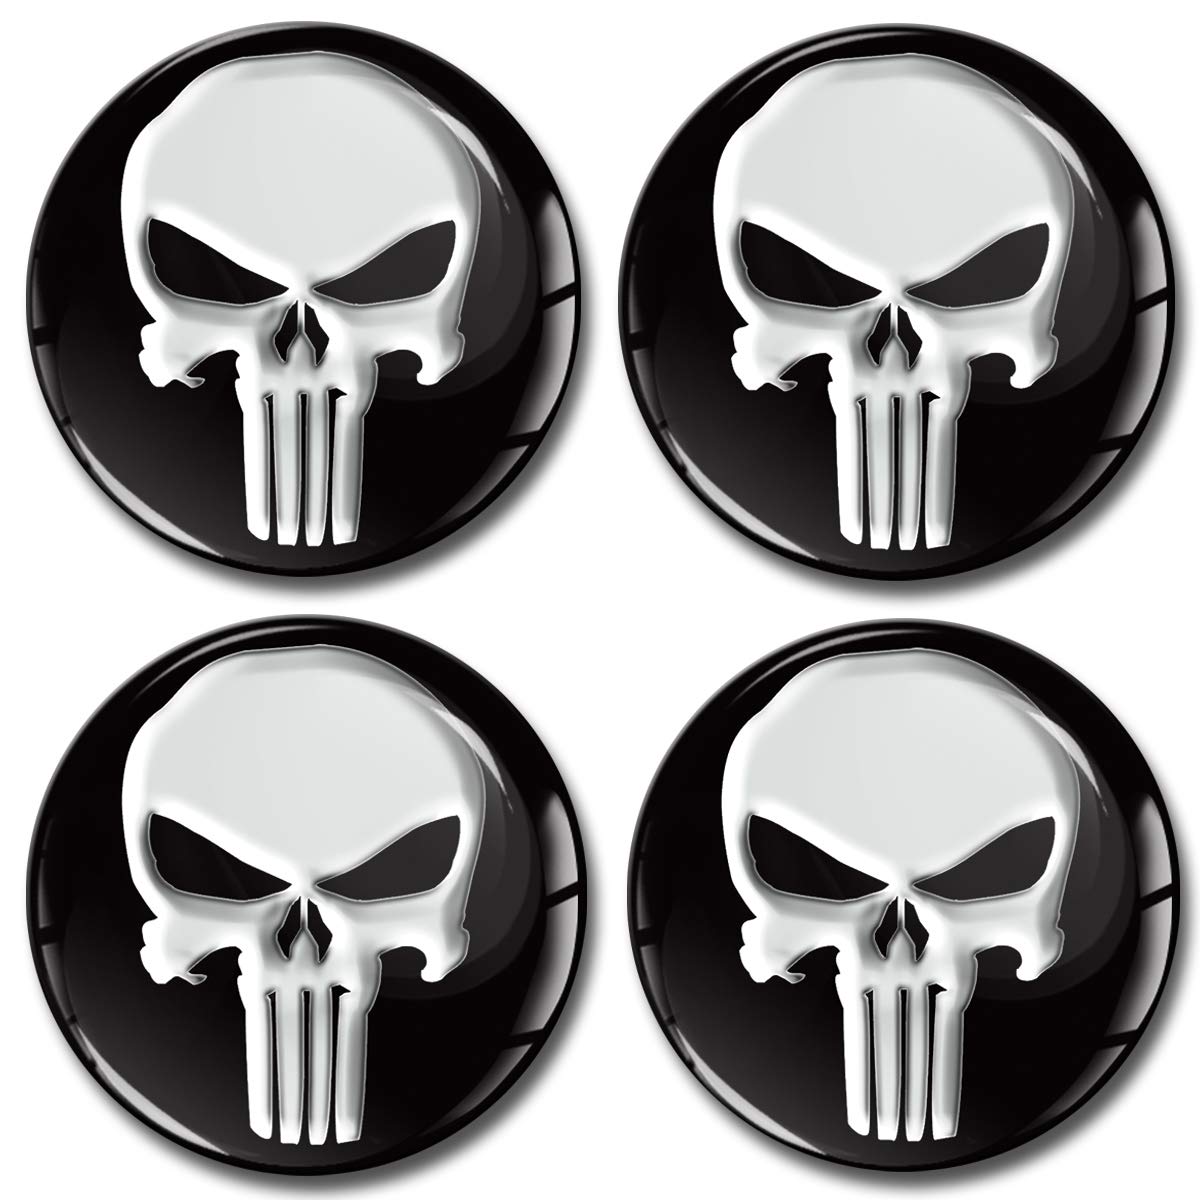 3D Silikon Aufkleber Punisher Schädel Totenkopf Skull Helm Auto Motorrad Emblem